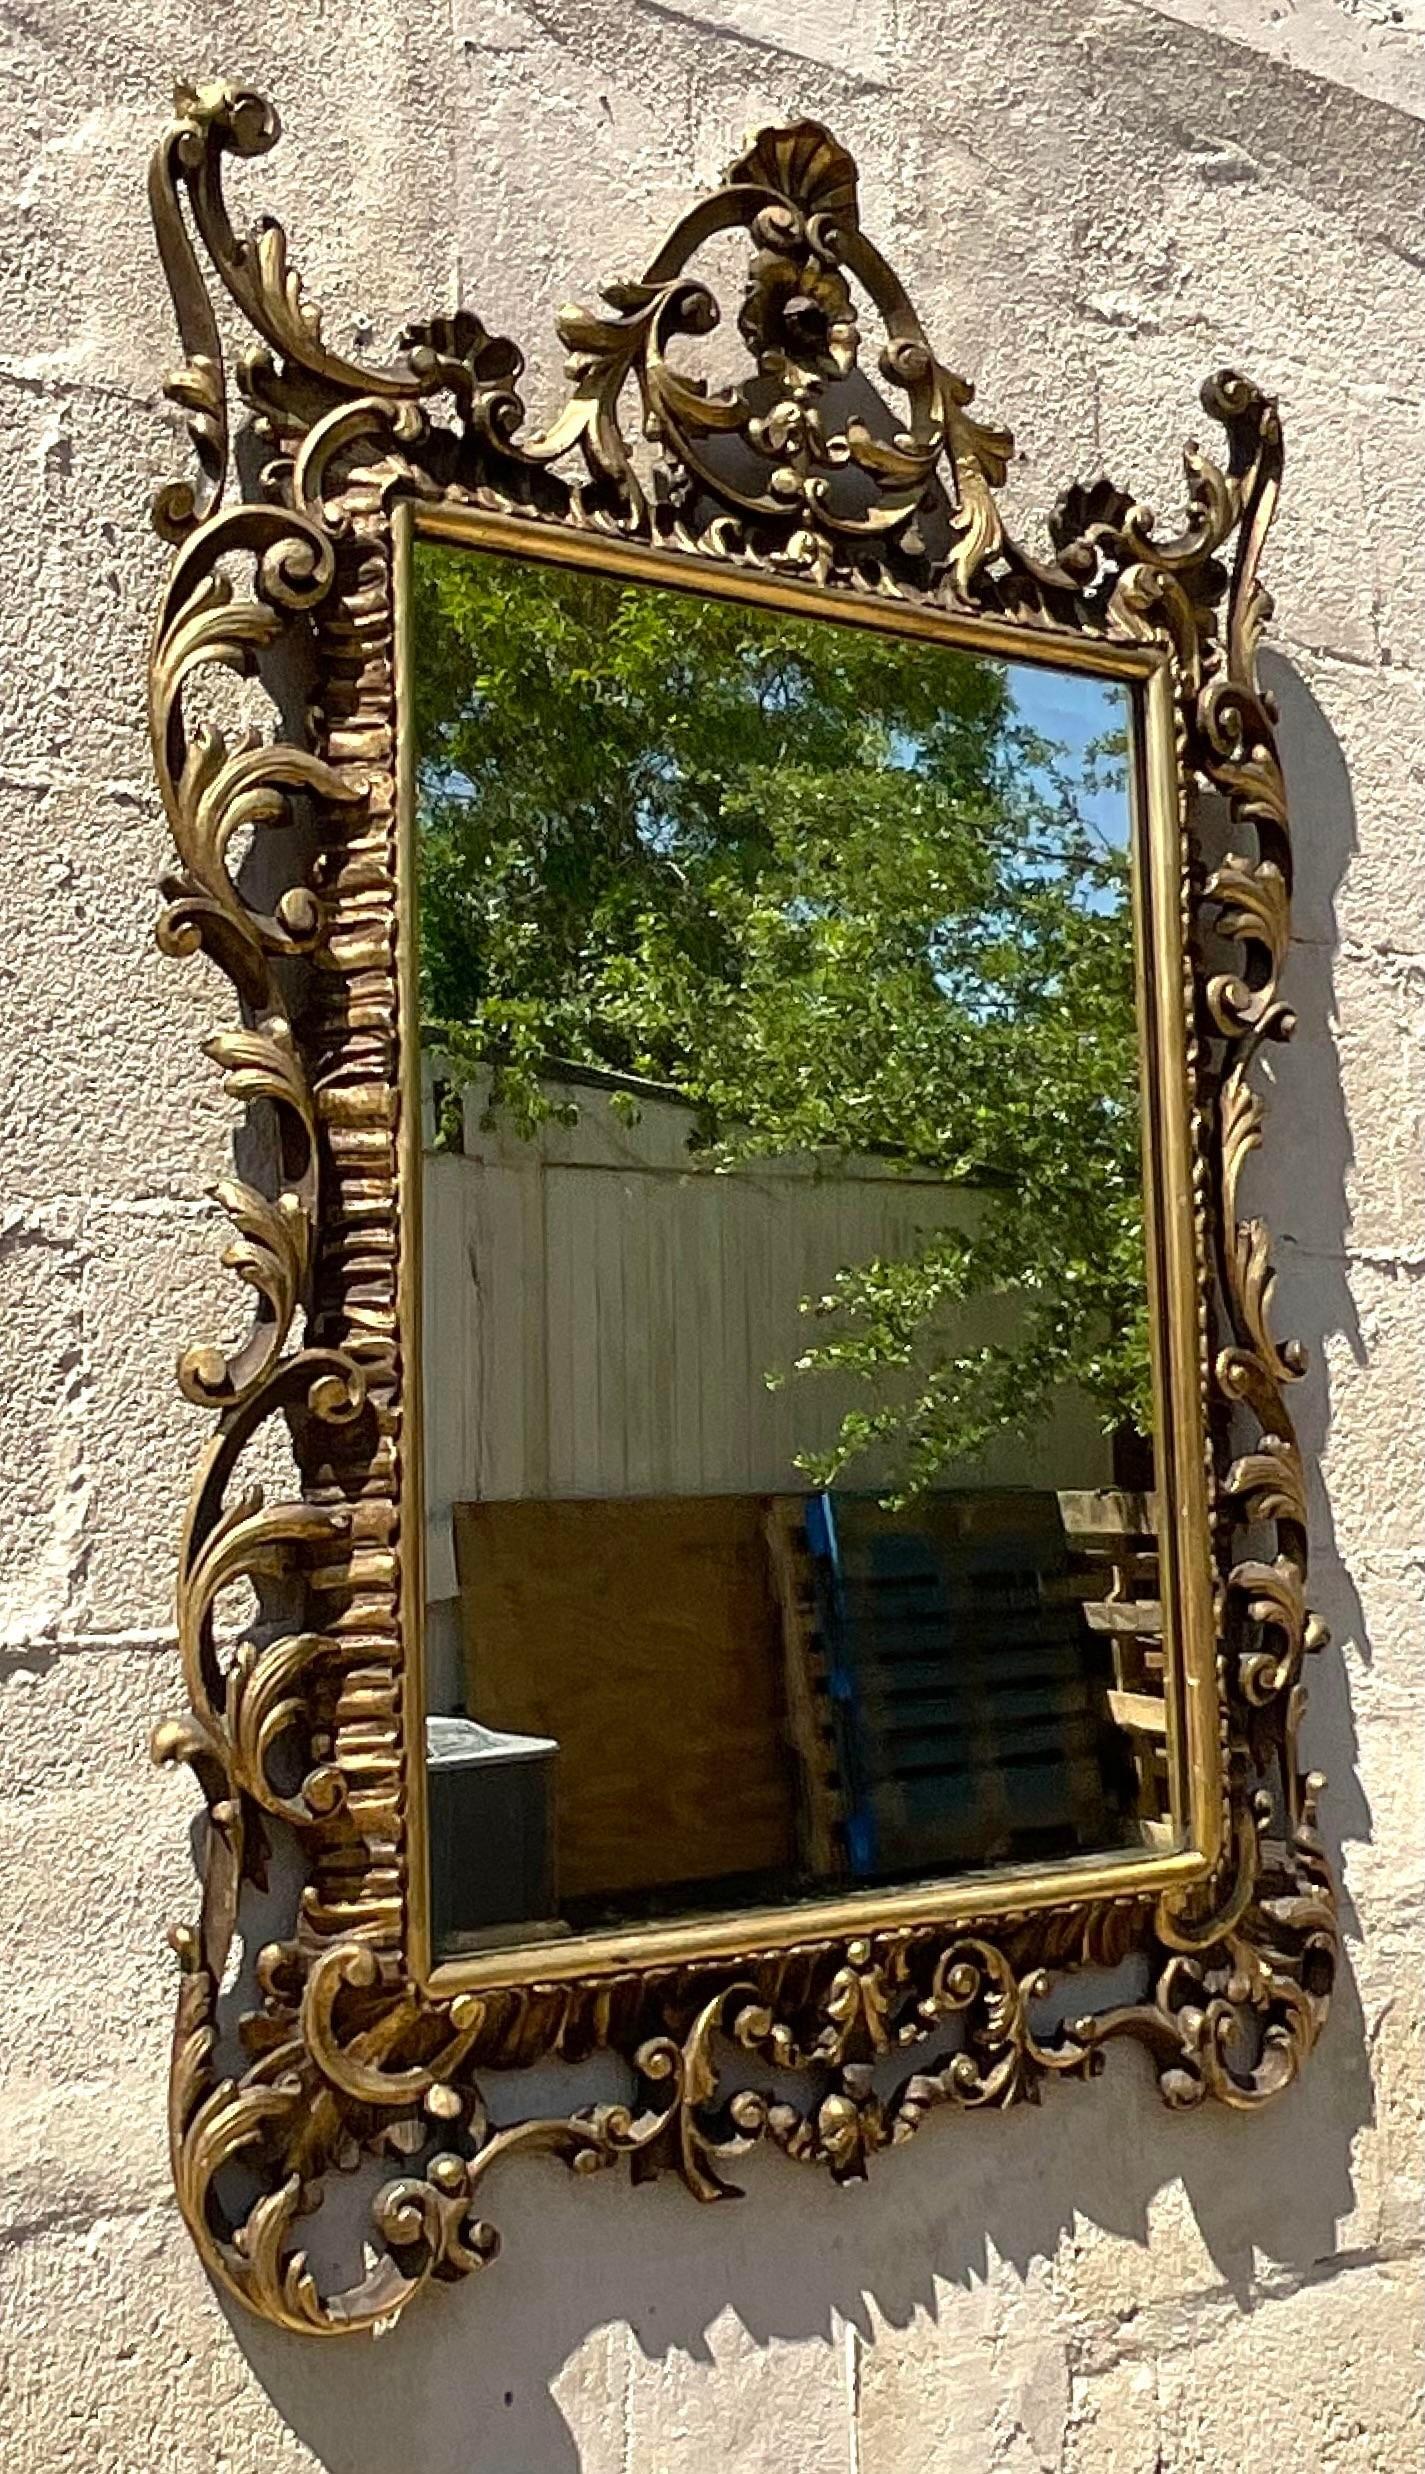 Faites l'expérience d'un luxe intemporel avec notre miroir sculpté doré Vintage Regency. Inspiré de l'élégance américaine, ce miroir présente des détails sculptés complexes et une finition dorée lustrée, alliant un design Regency classique à un